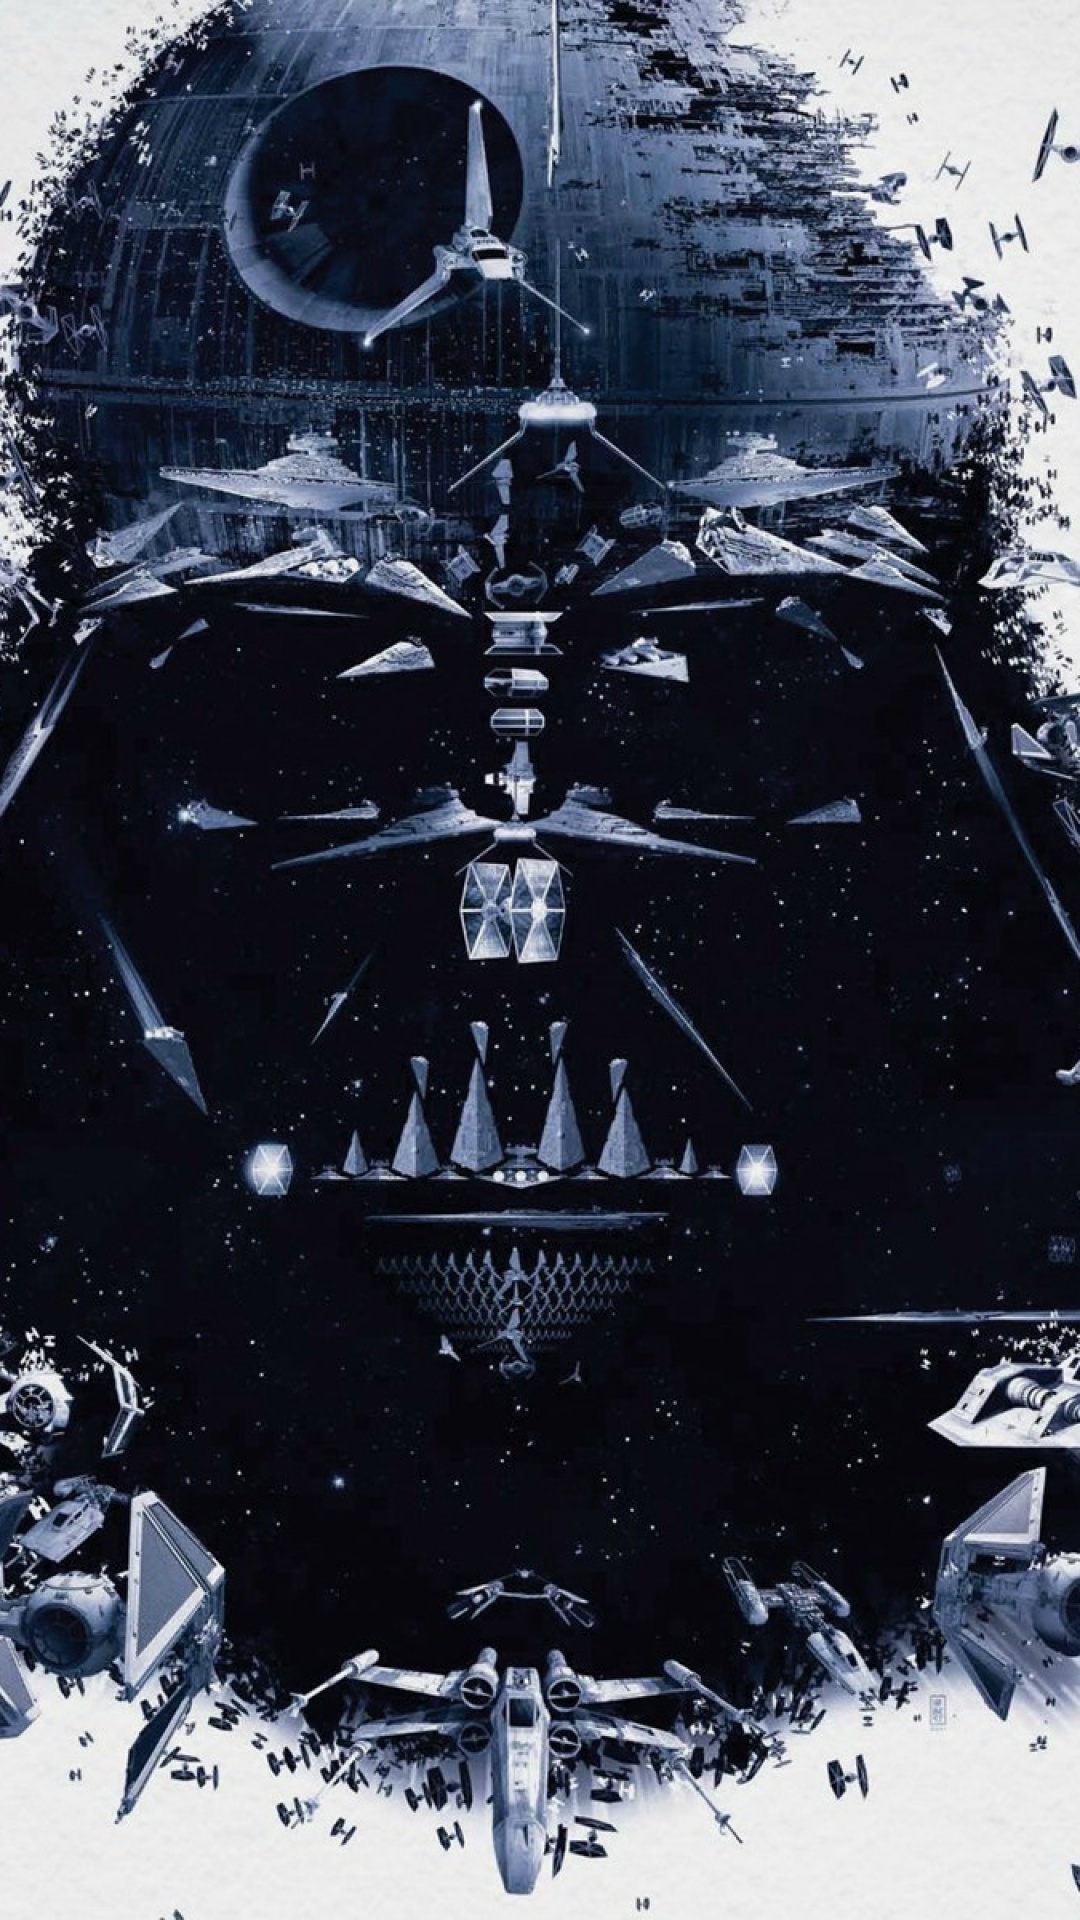 75 Star Wars Darth Vader Wallpaper On Wallpapersafari